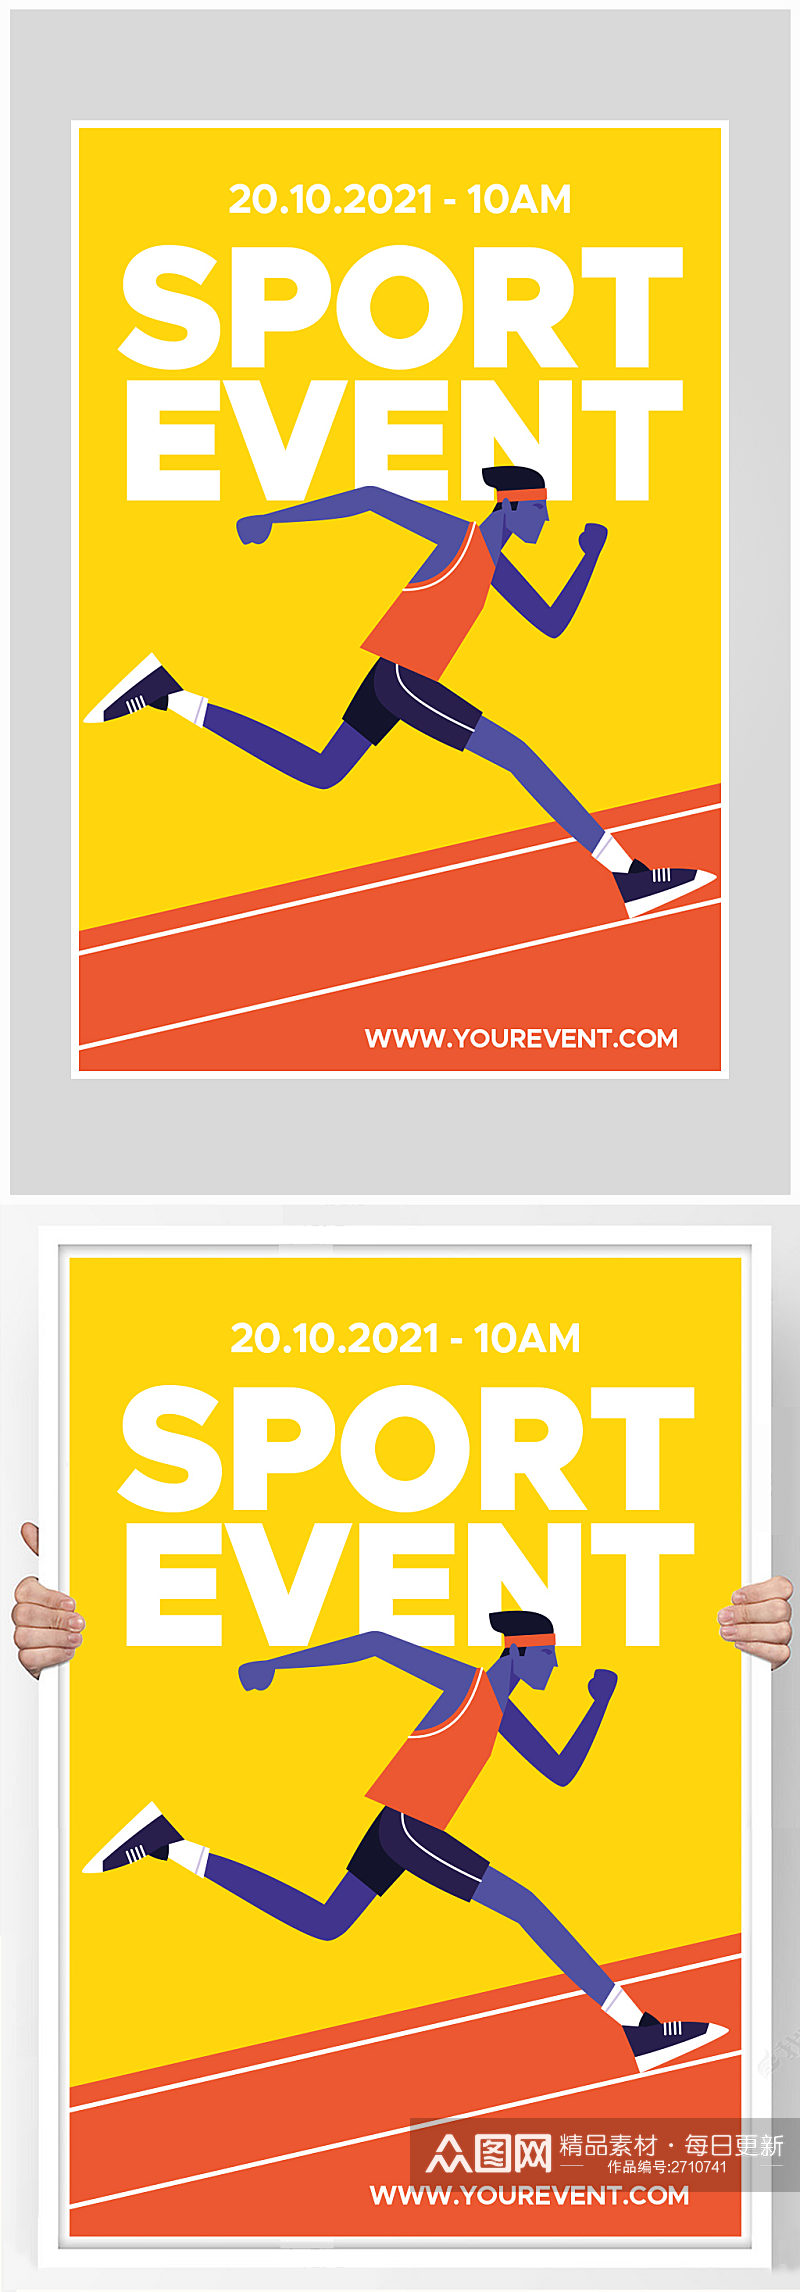 创意简约扁平化体育赛事海报设计素材